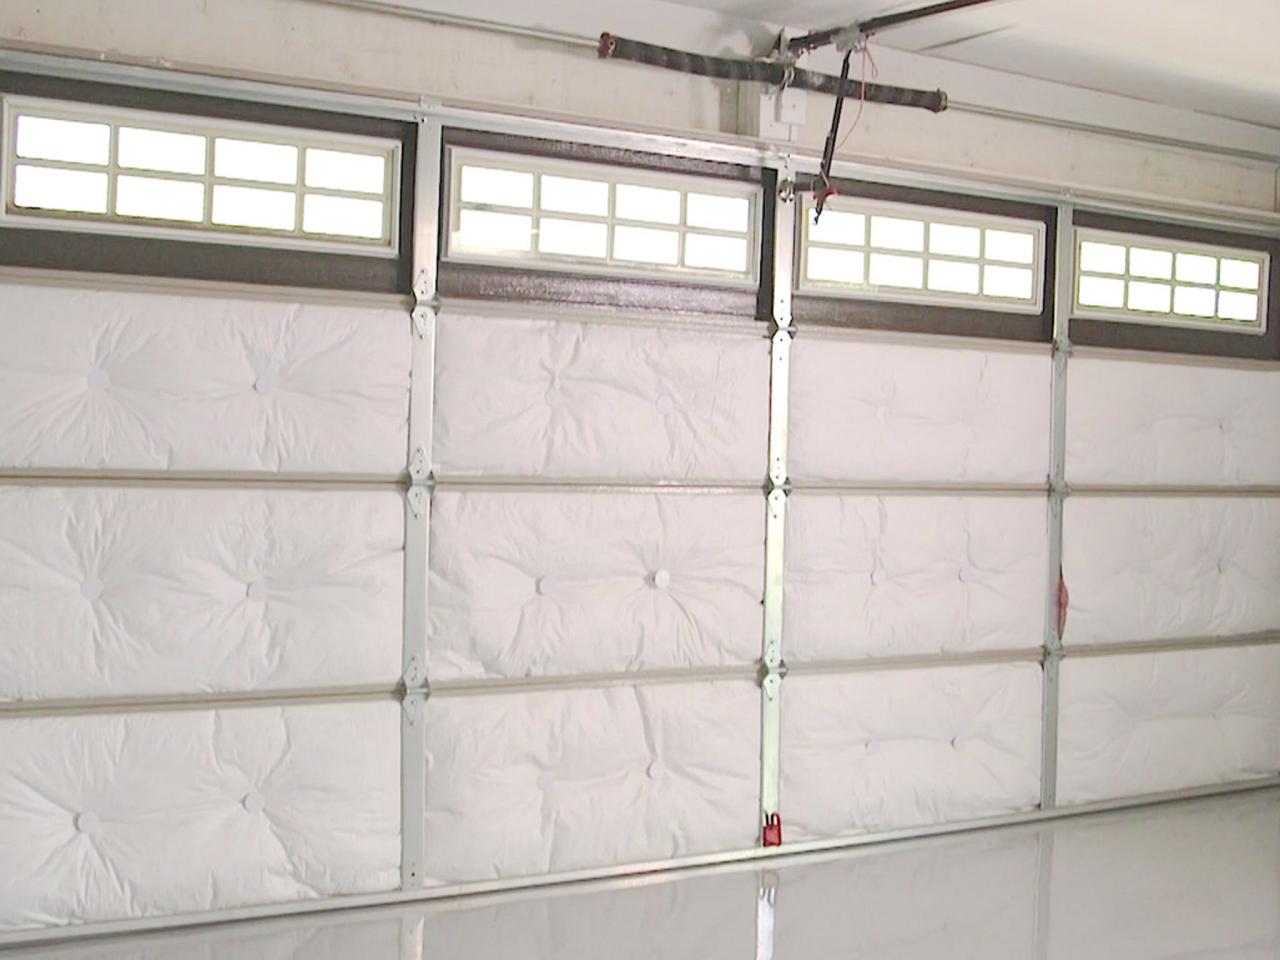 How To Insulate A Garage Door, Who Makes The Best Insulated Garage Door